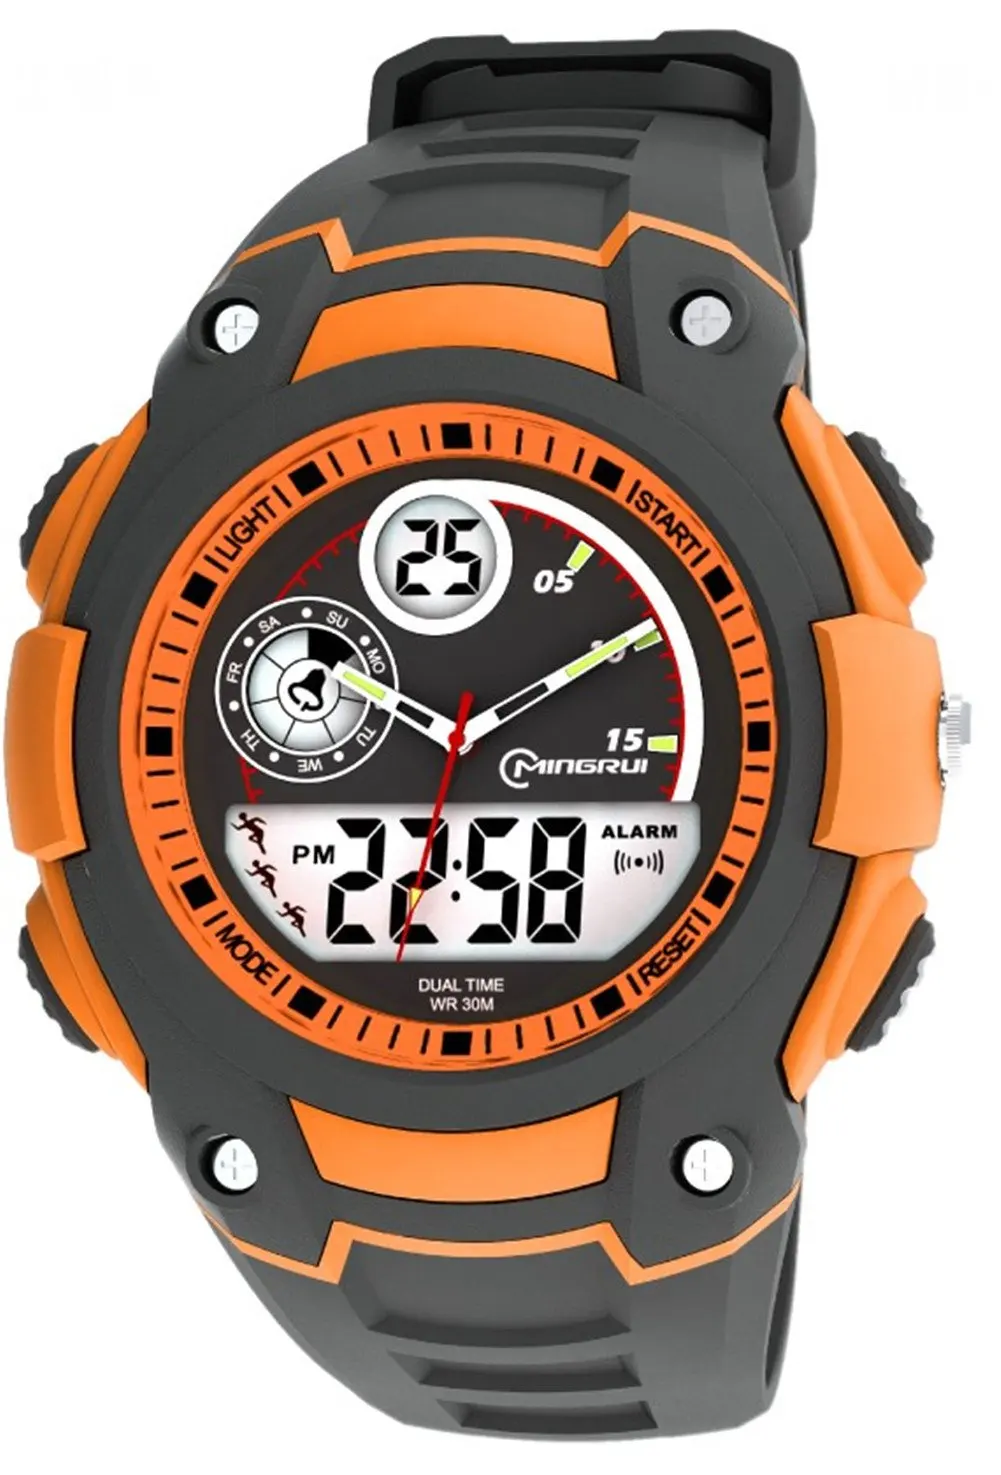 Часы аларм. Diray Sport часы. Timex часы Analog Digital. Часы мужские для мальчиков. Analog Digital часы.